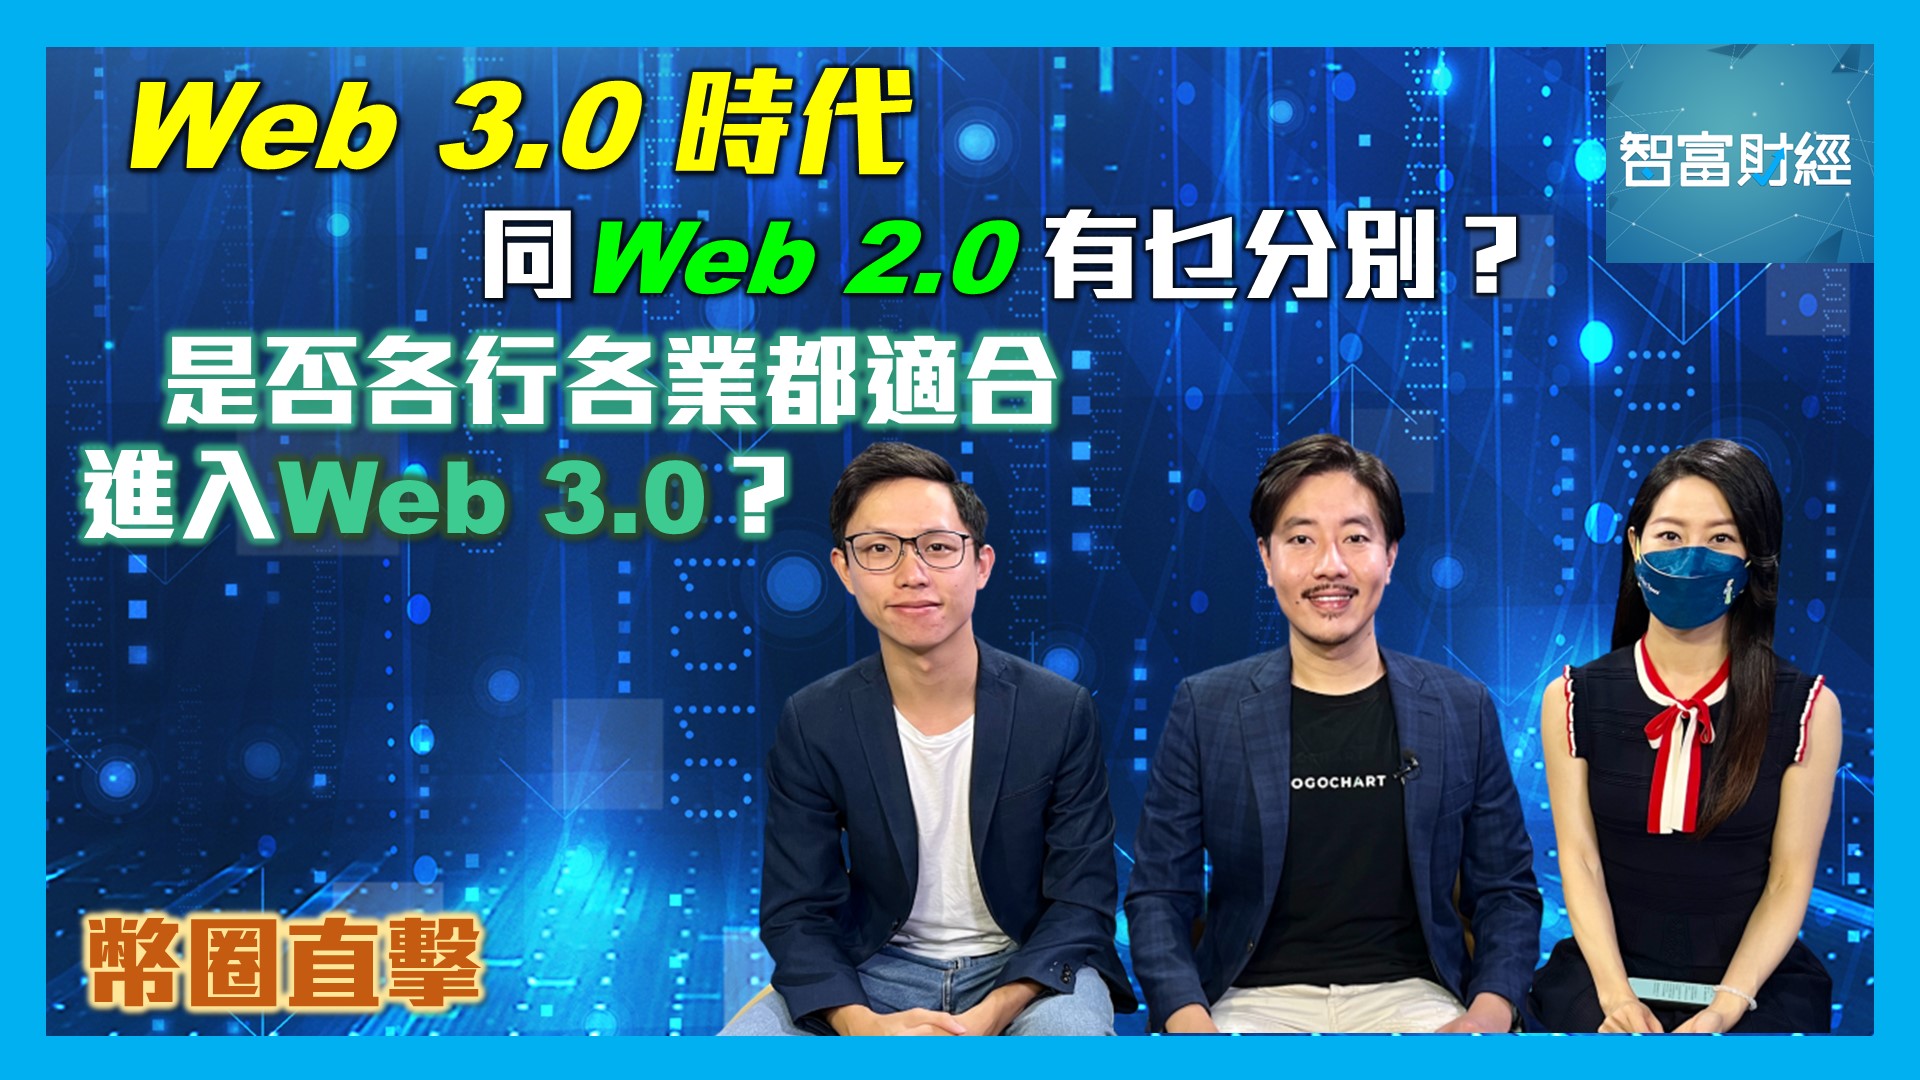 《》 節目重溫: 【幣圈直擊】何謂「Web 3.0」？「Web 3.0」＆「Web 2.0」有乜分別？是否各行各業都適合進入「Web 3.0」？